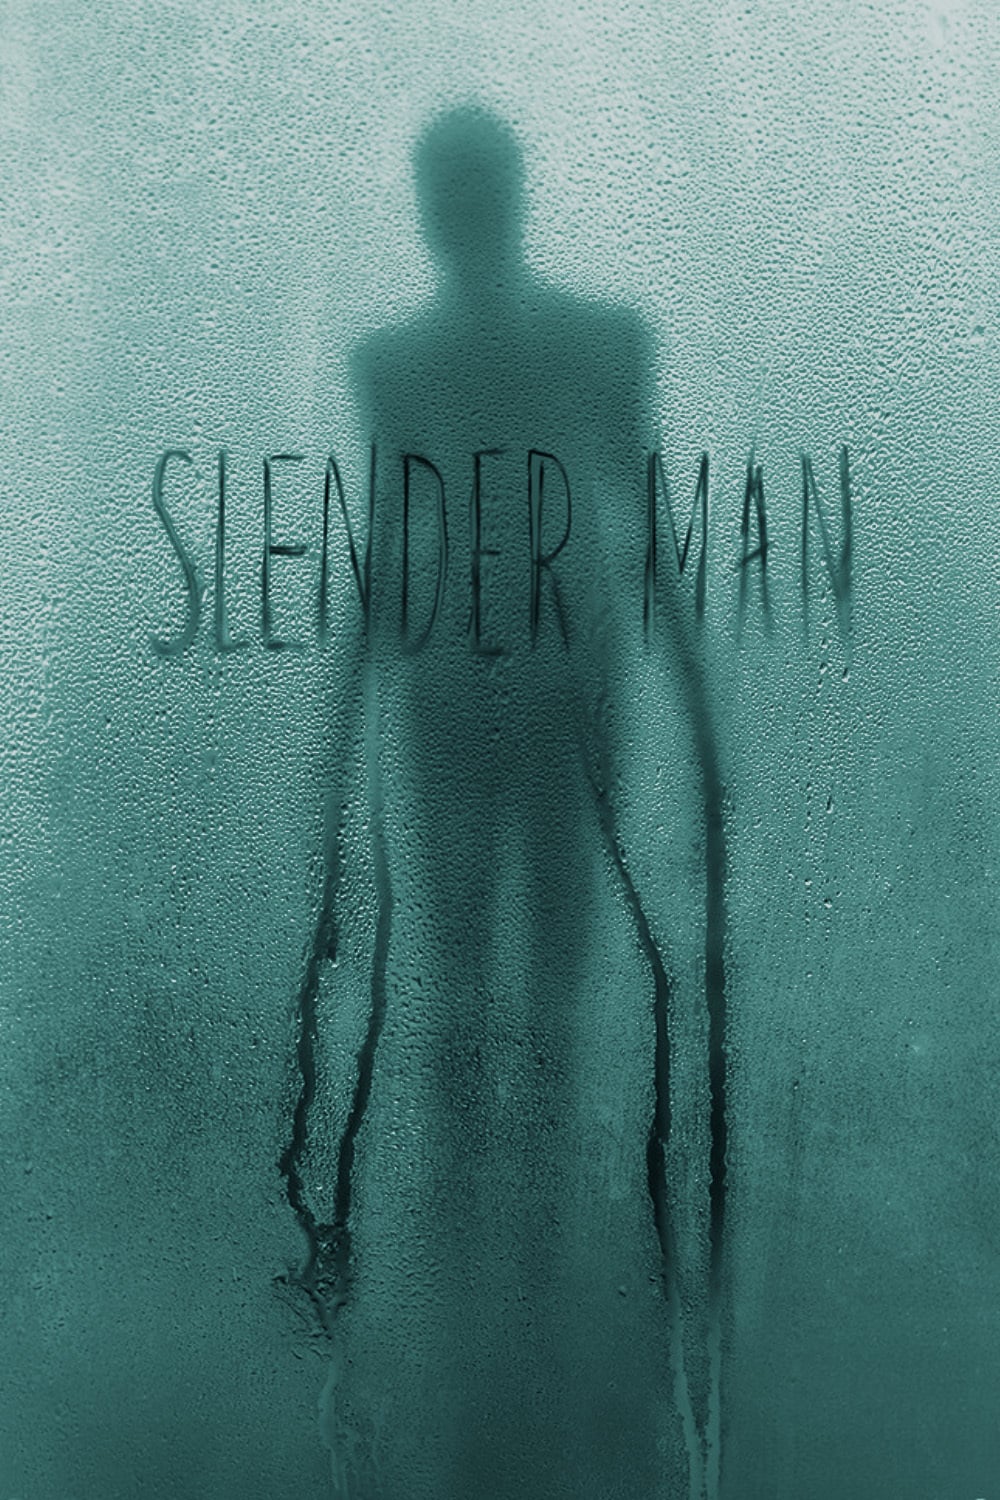 Slender Man Picture